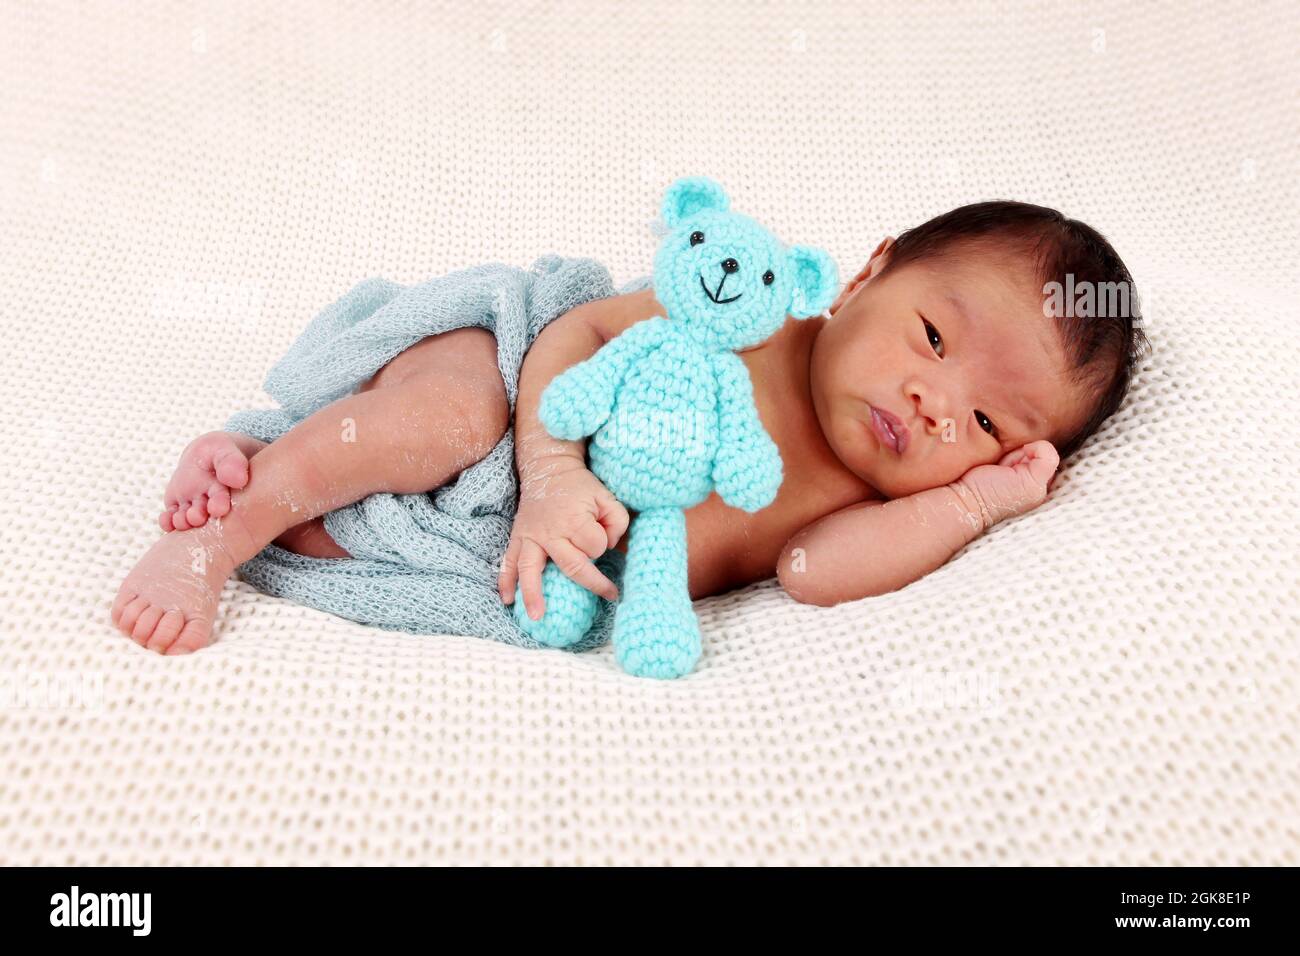 Niño con padres de la etnia filipina bebé nacido en el Reino Unido, recién nacido niño Foto de stock